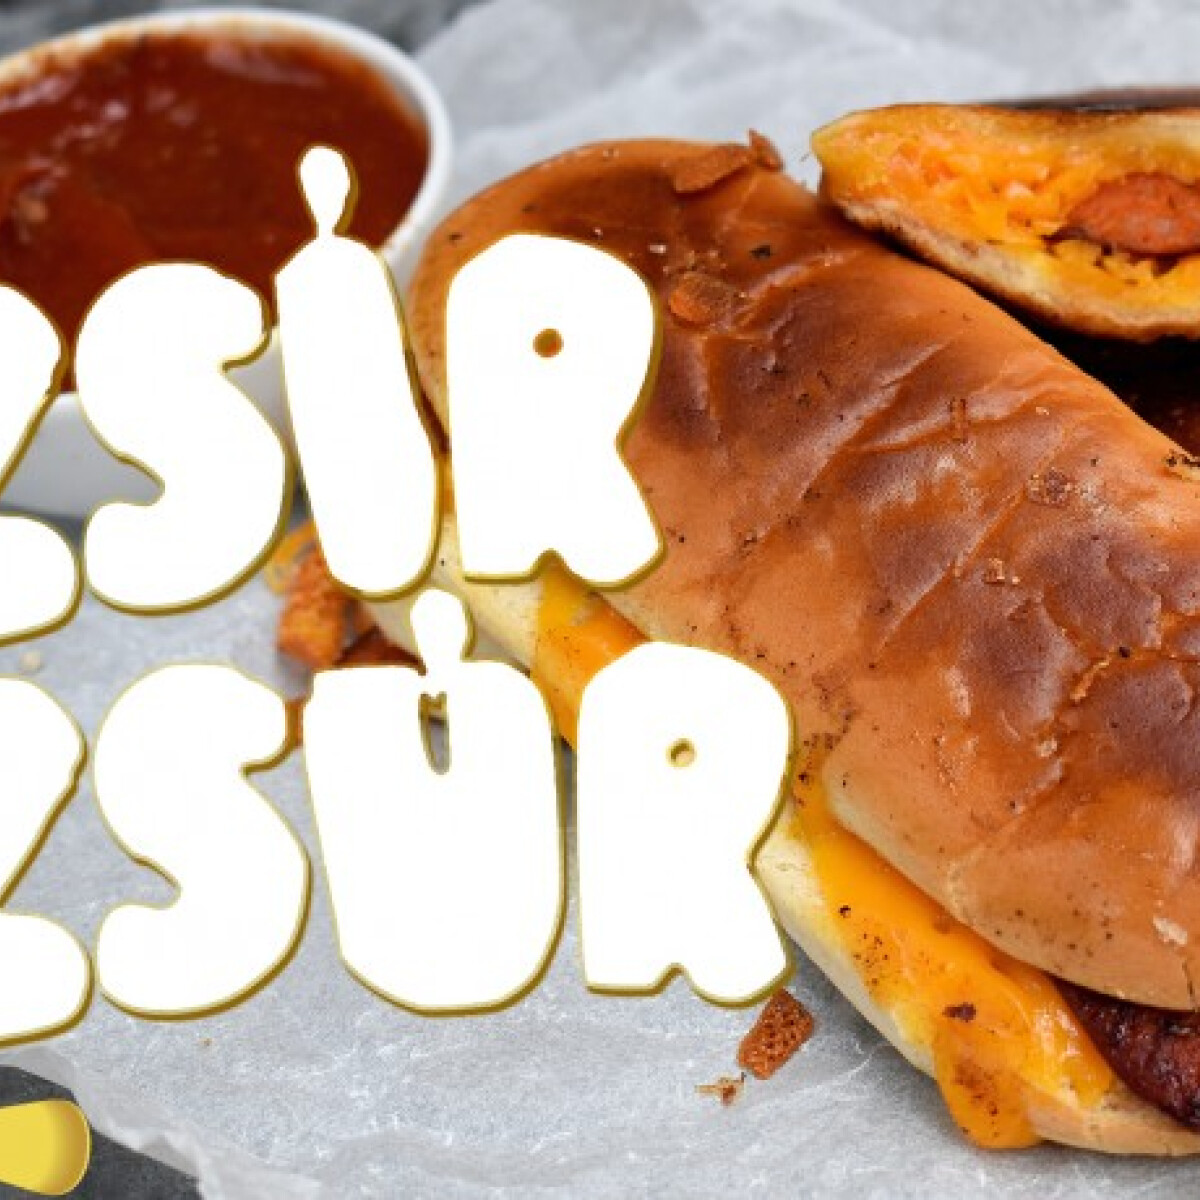 ZSÍRZSÚR: amikor a klasszik hot dog a curry wurst-tal fuzionál